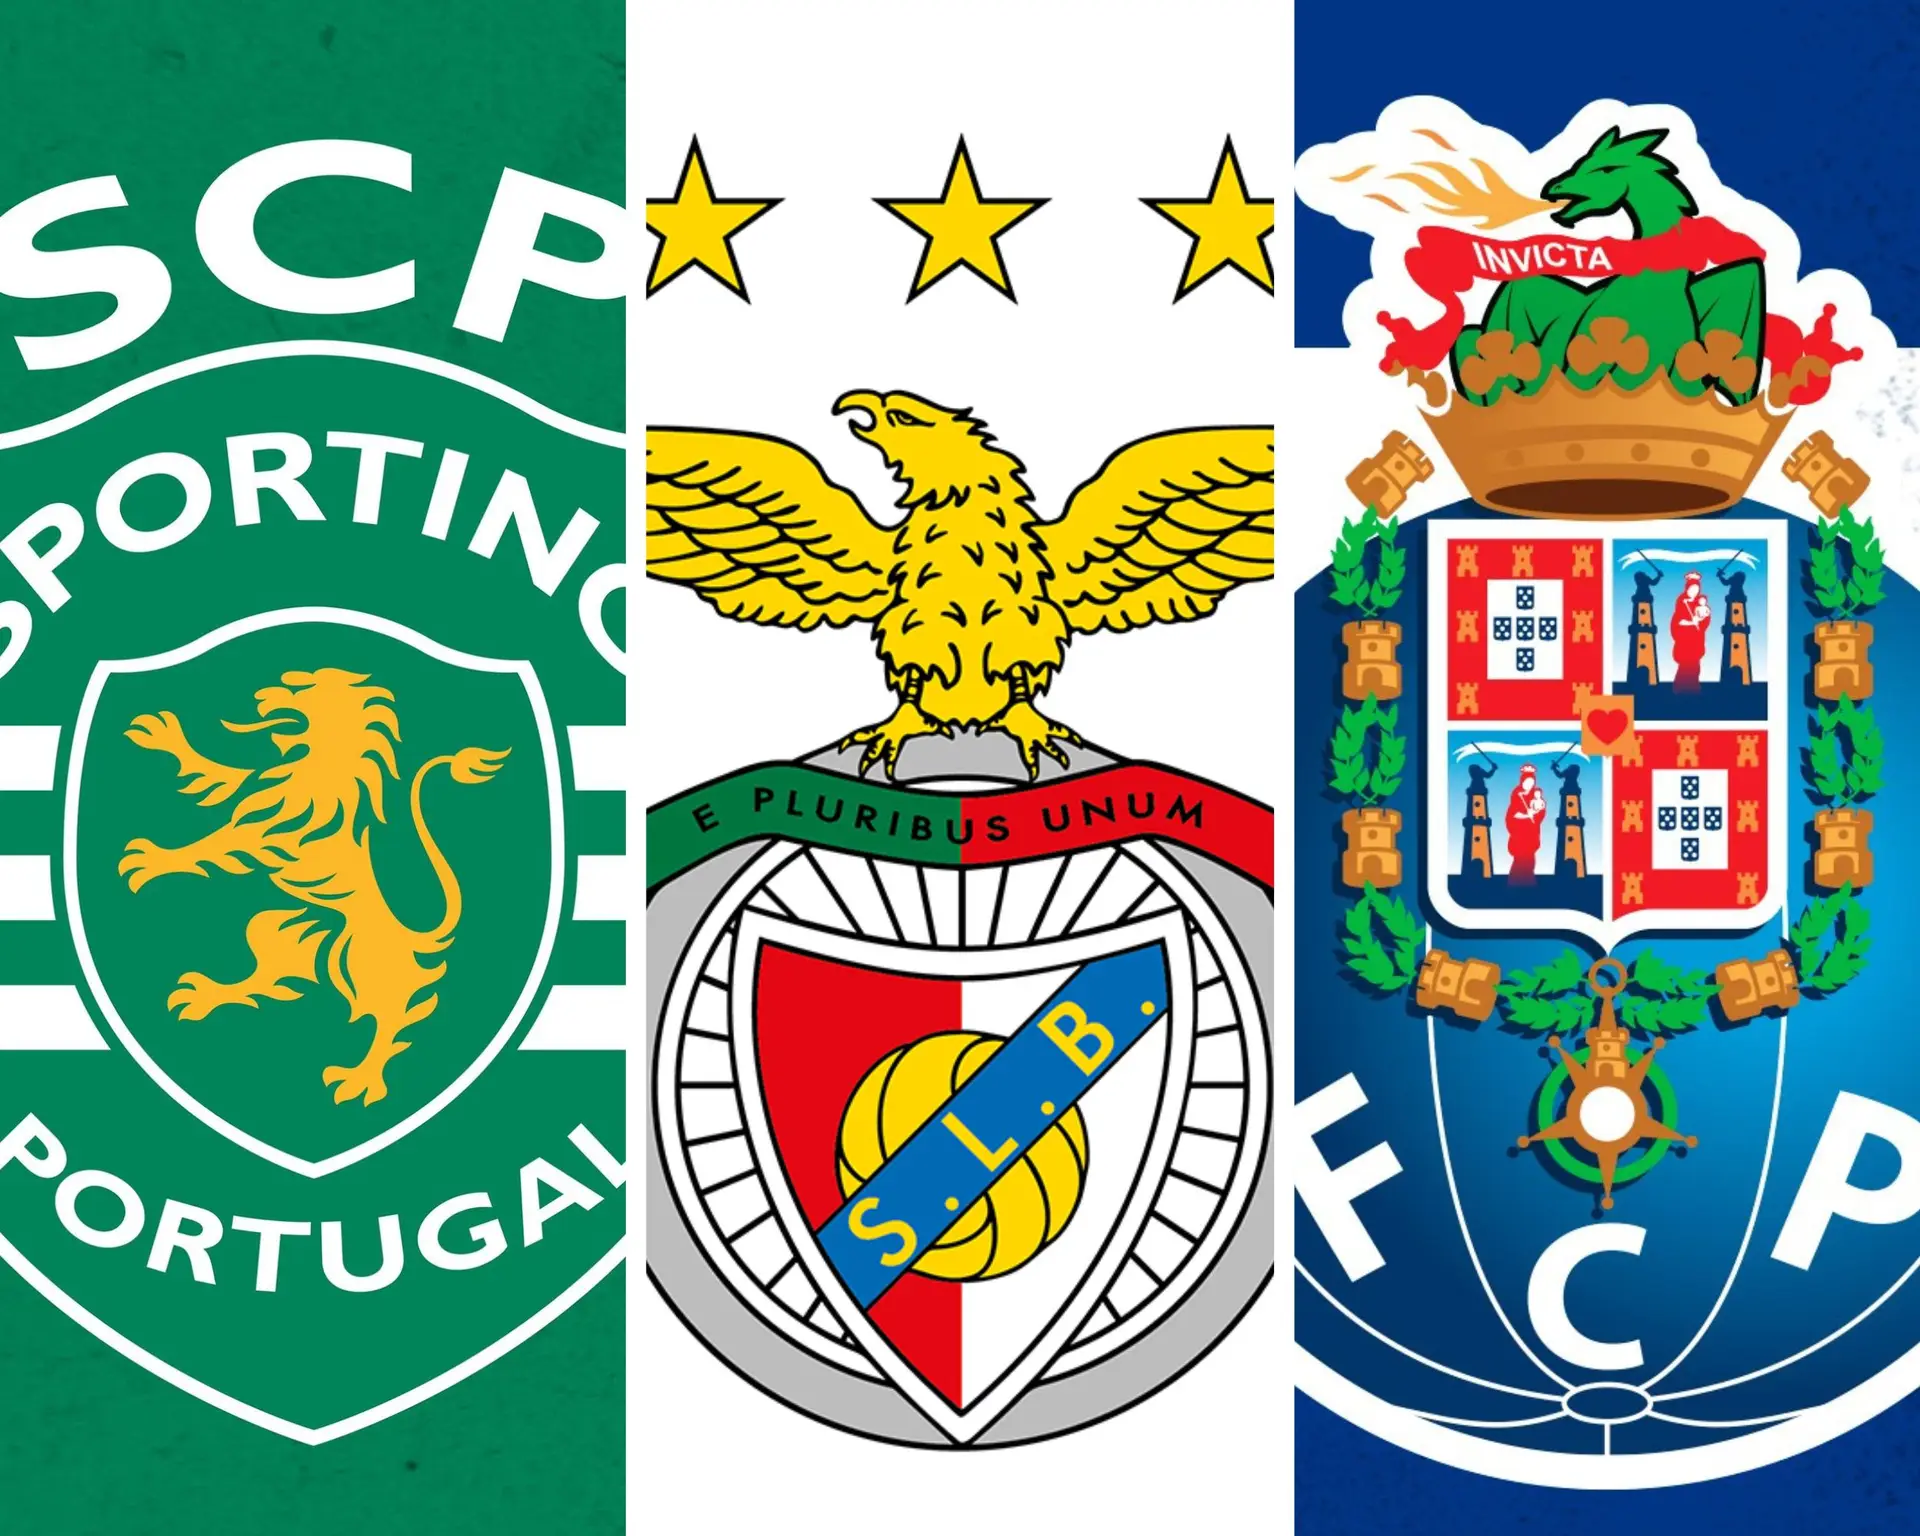 Assistir em Directo aos Jogos do Sporting, Benfica e Porto